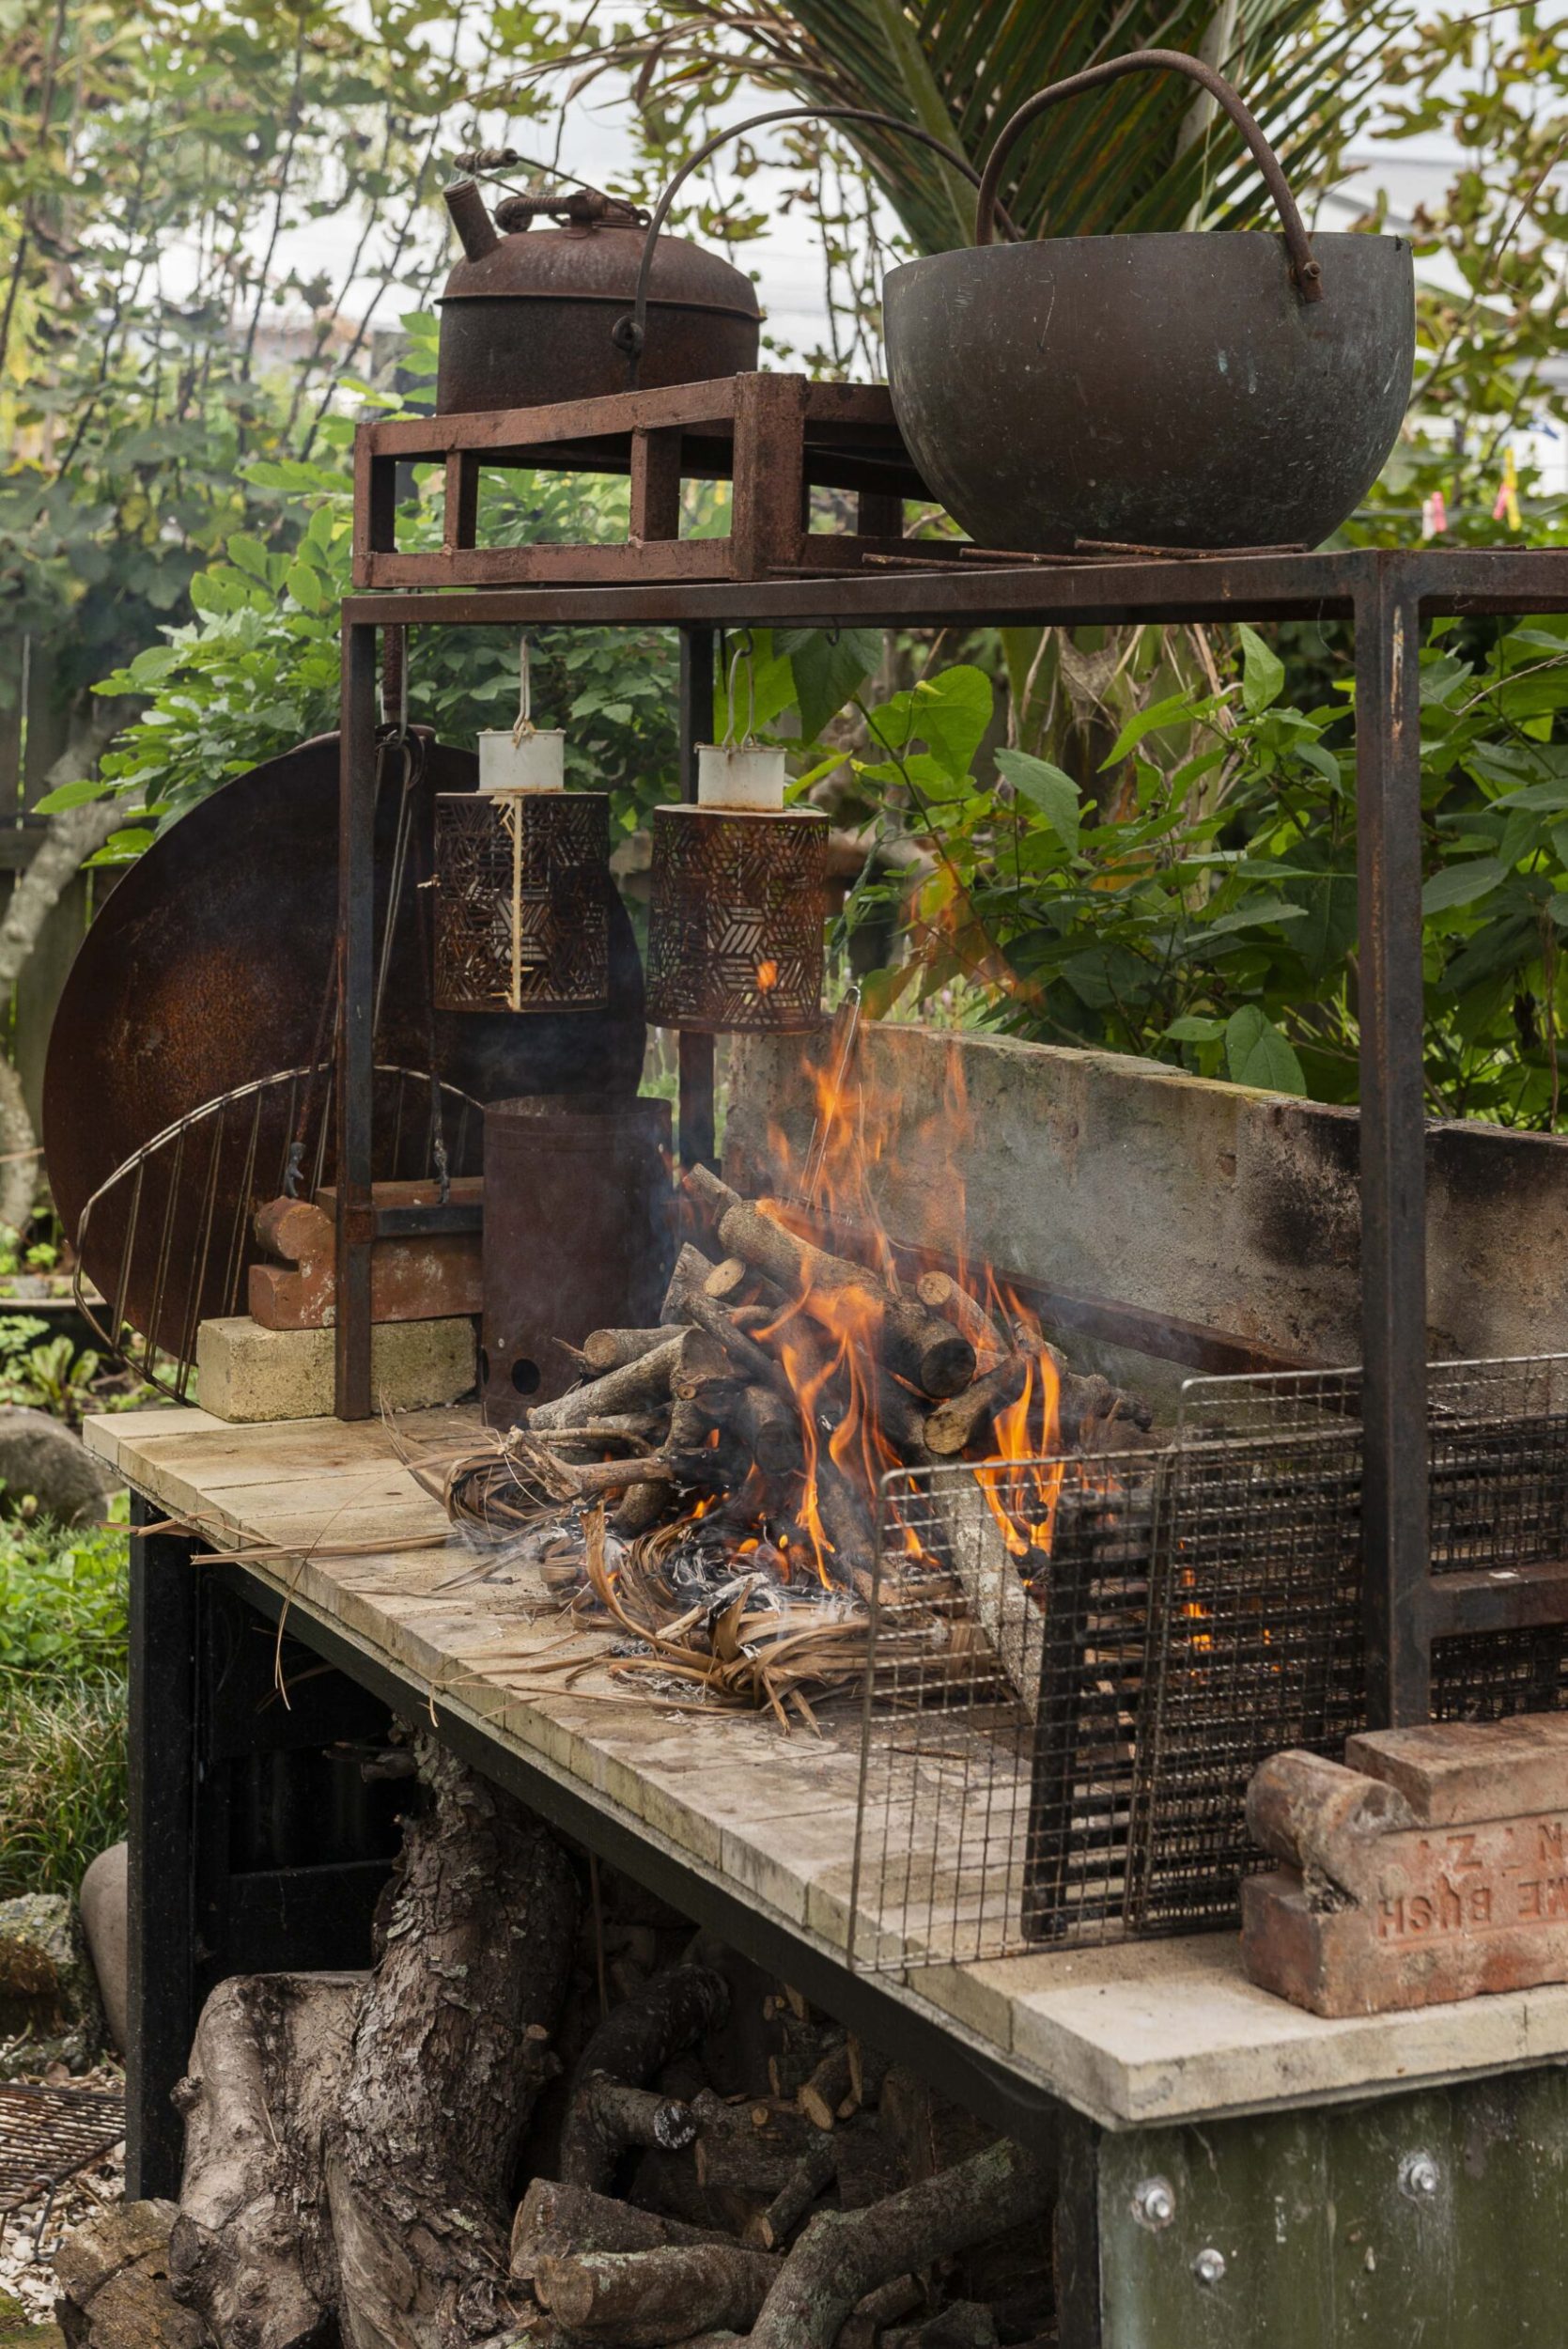 A fire on an outdoor kitchen in a garden